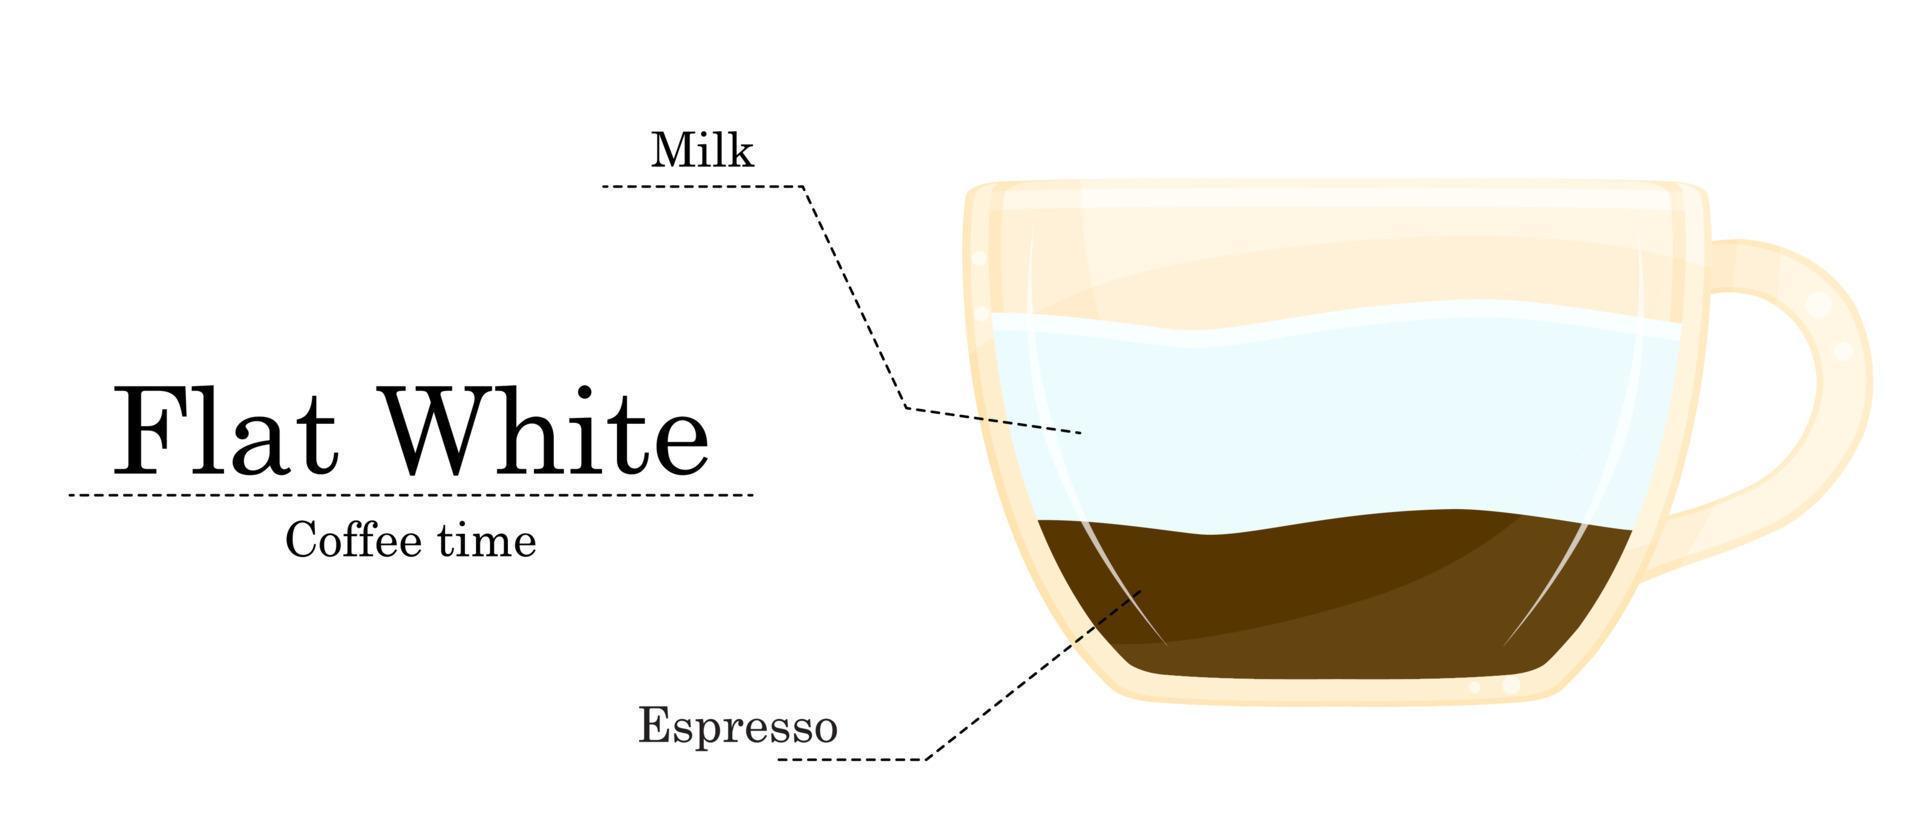 vecteur illustration de café recette, plat blanc recette, café magasin illustration